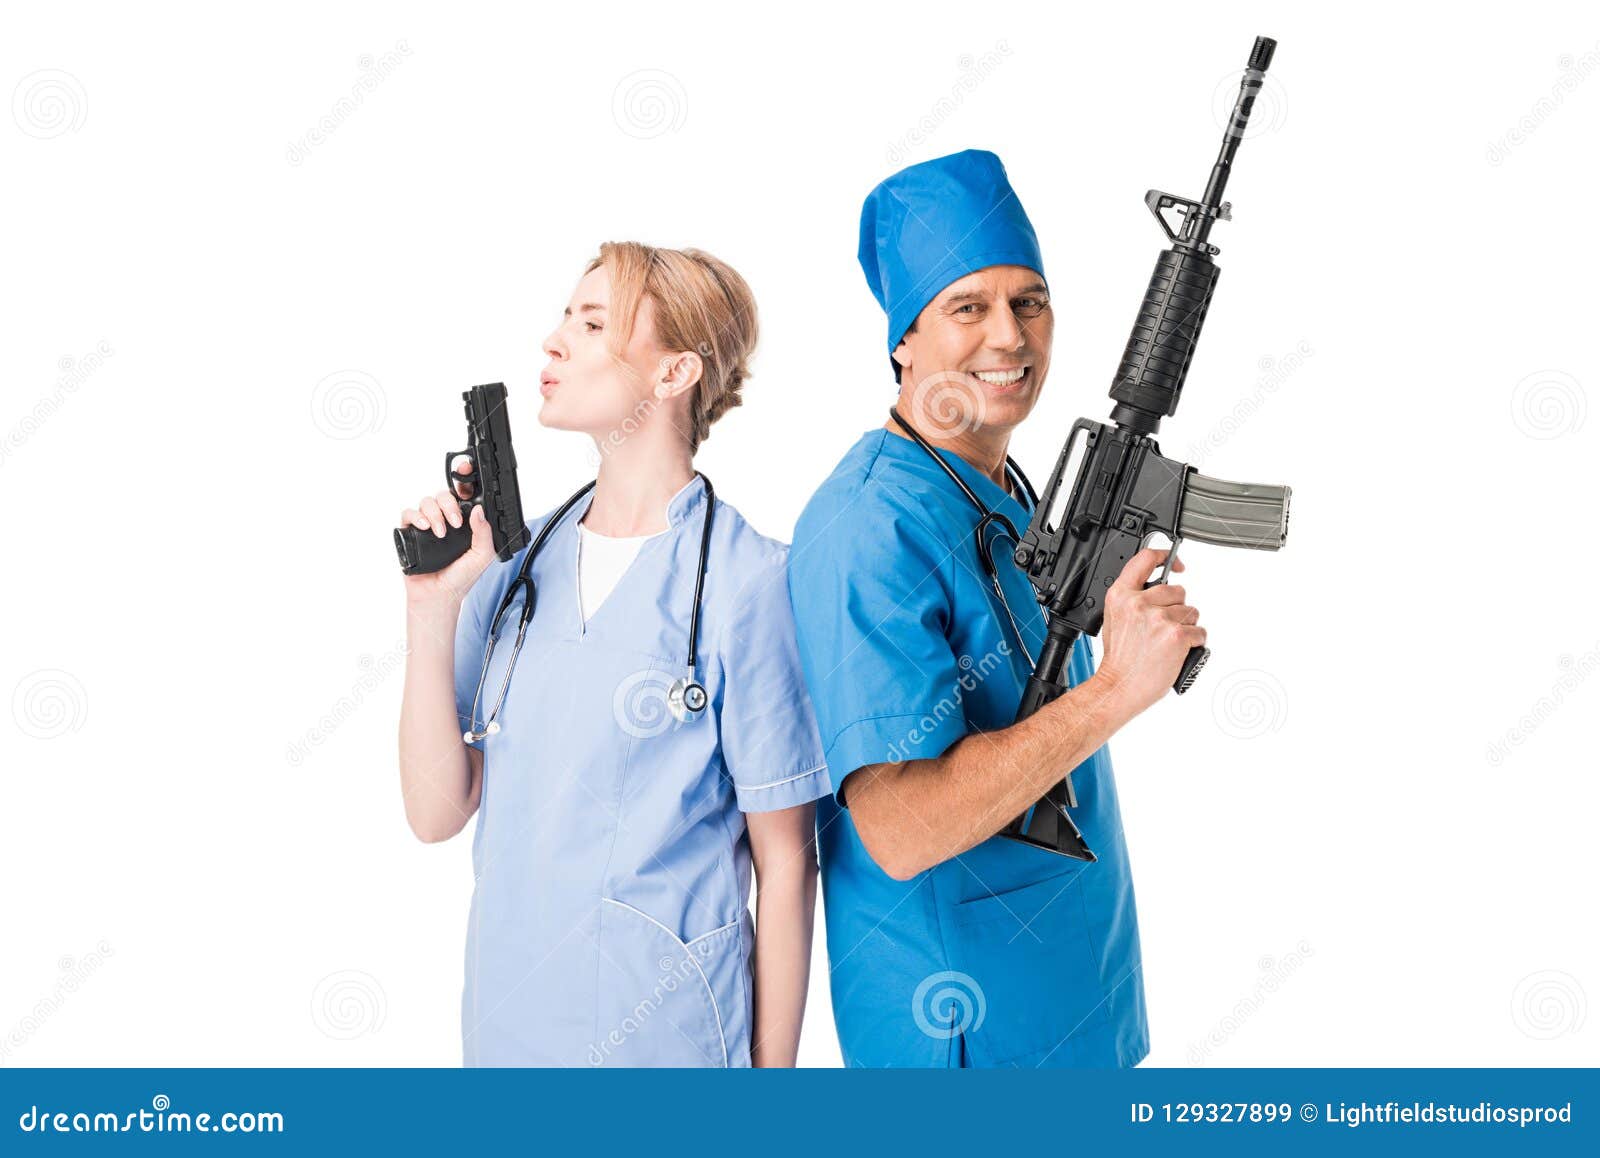 smiling-male-doctor-nurse-guns-smiling-male-doctor-nurse-guns-isolated-white-129327899.jpg